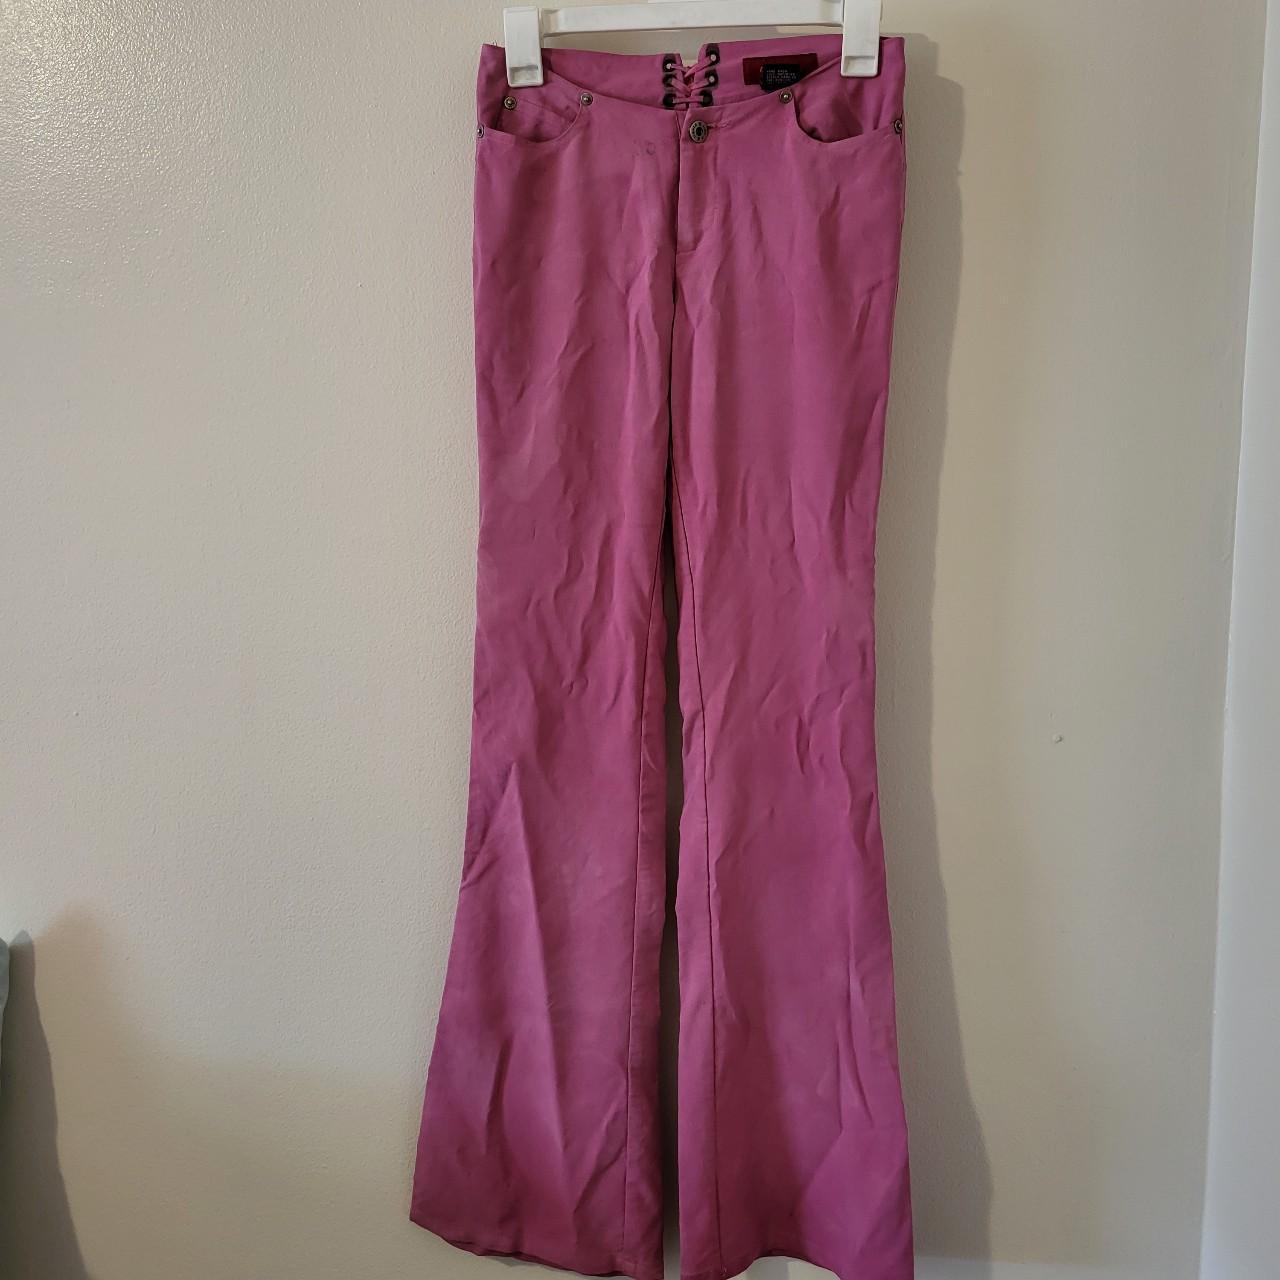 Vintage Y2K style low-rise pants Barbie Pink... - Depop